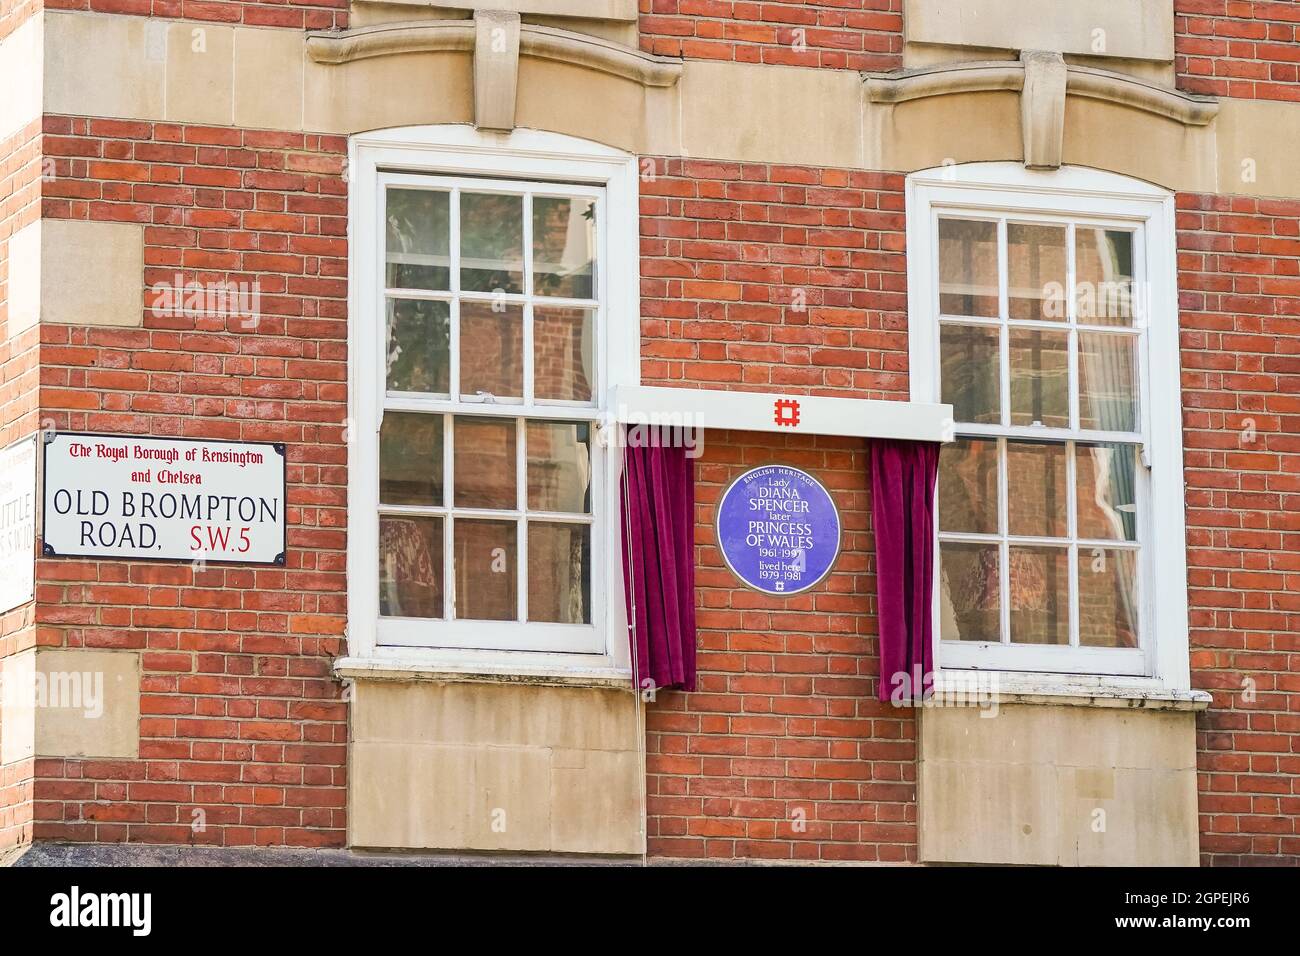 Vue générale de la nouvelle plaque bleue du patrimoine anglais à Diana, princesse de Galles, devant la cour de Coleherne, Old Brompton Road, Londres. Date de la photo: Mercredi 29 septembre 2021. Banque D'Images